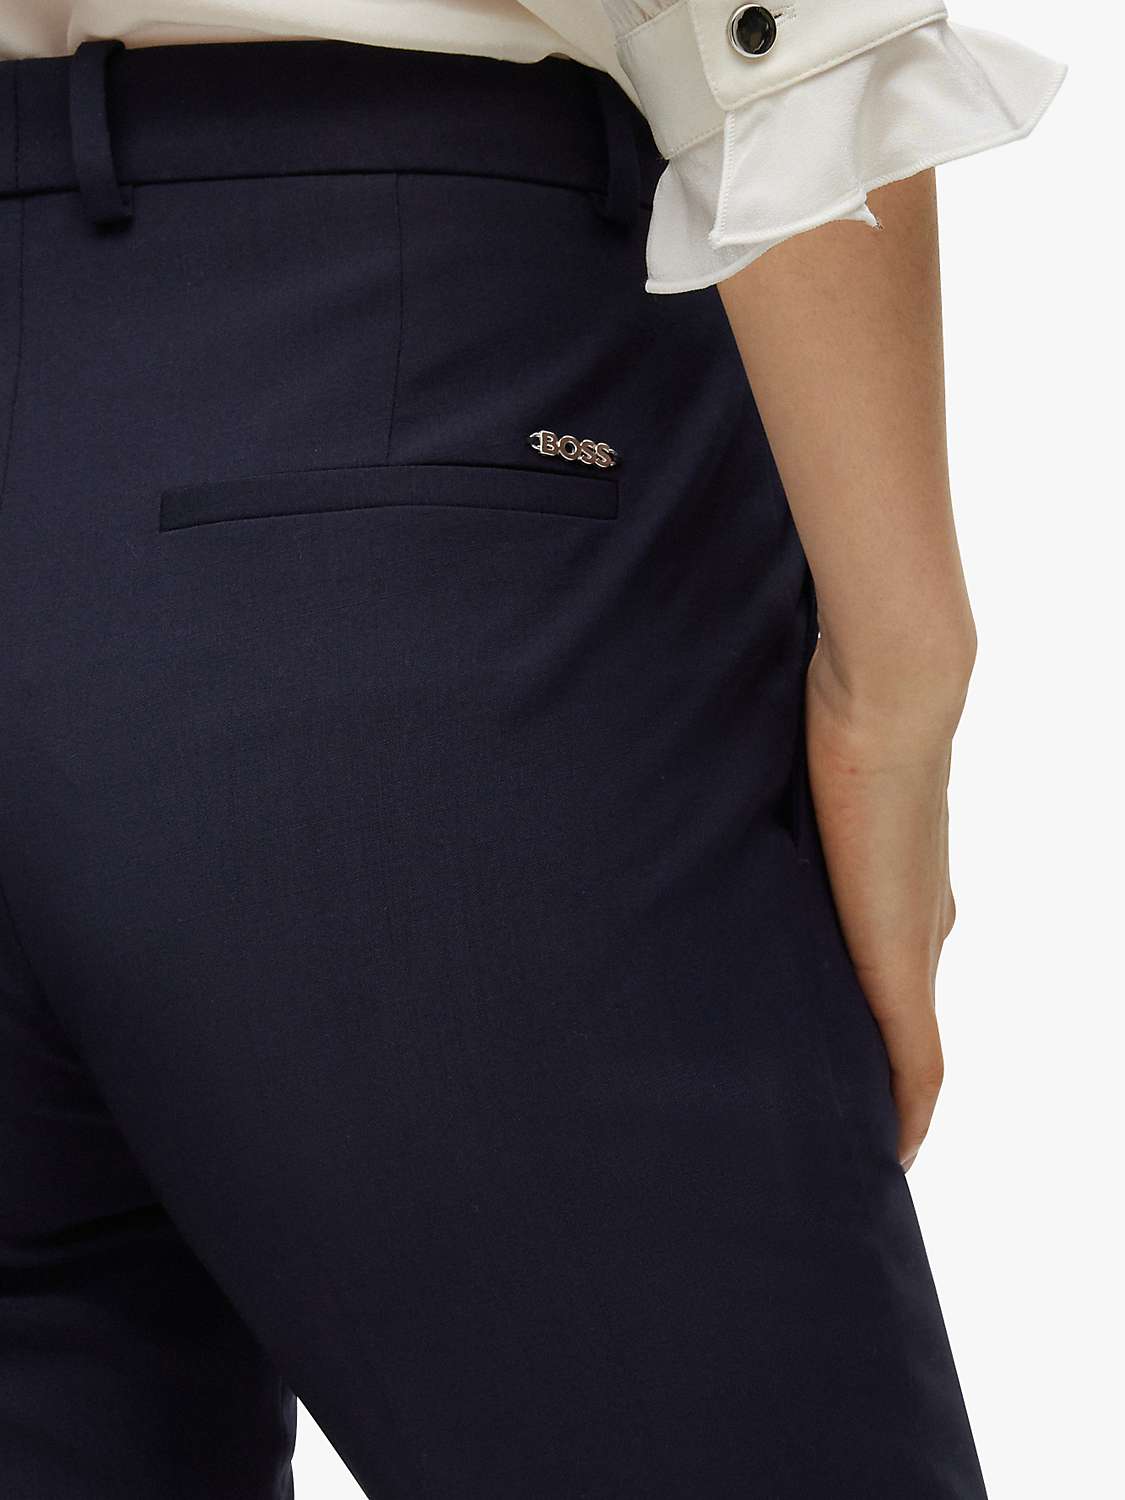 Buy HUGO BOSS Tameah Wool Trousers, Navy Online at johnlewis.com